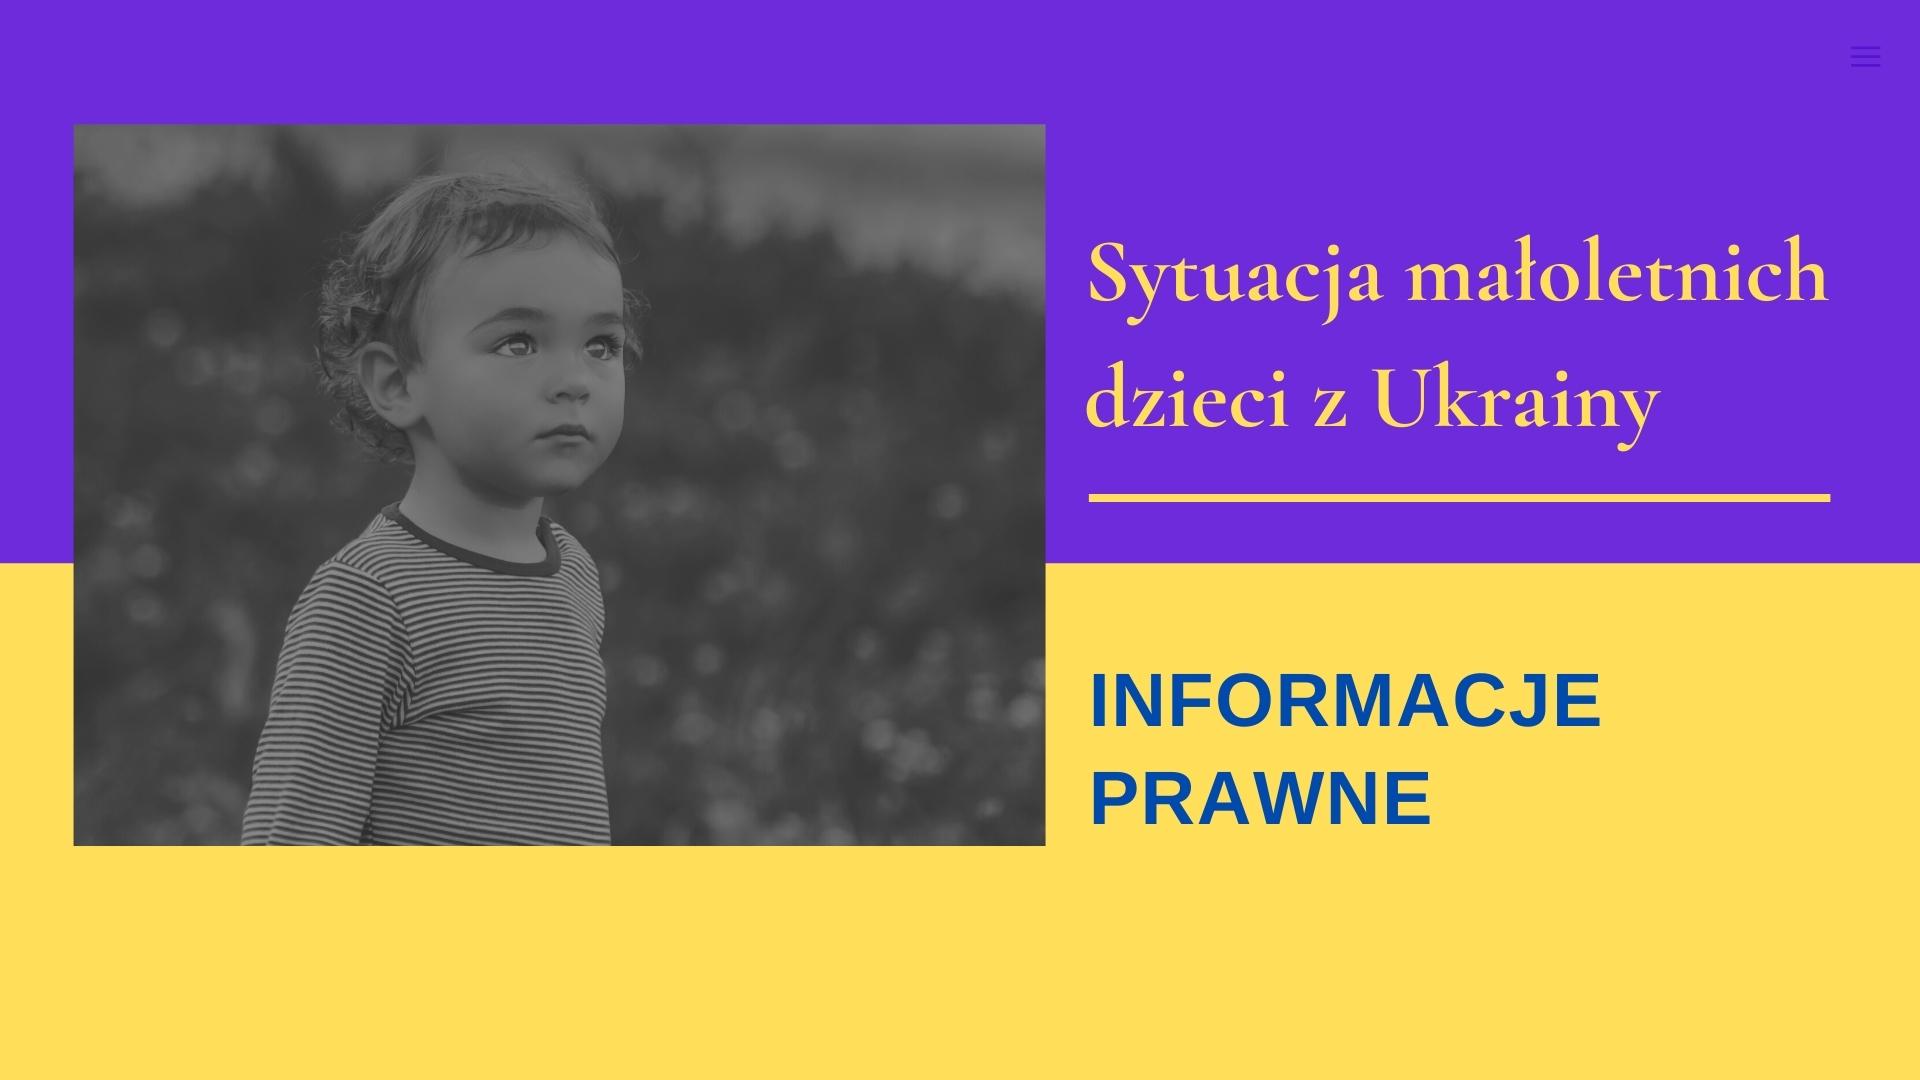 Sytuacja małoletnich dzieci z Ukrainy - informacje prawne